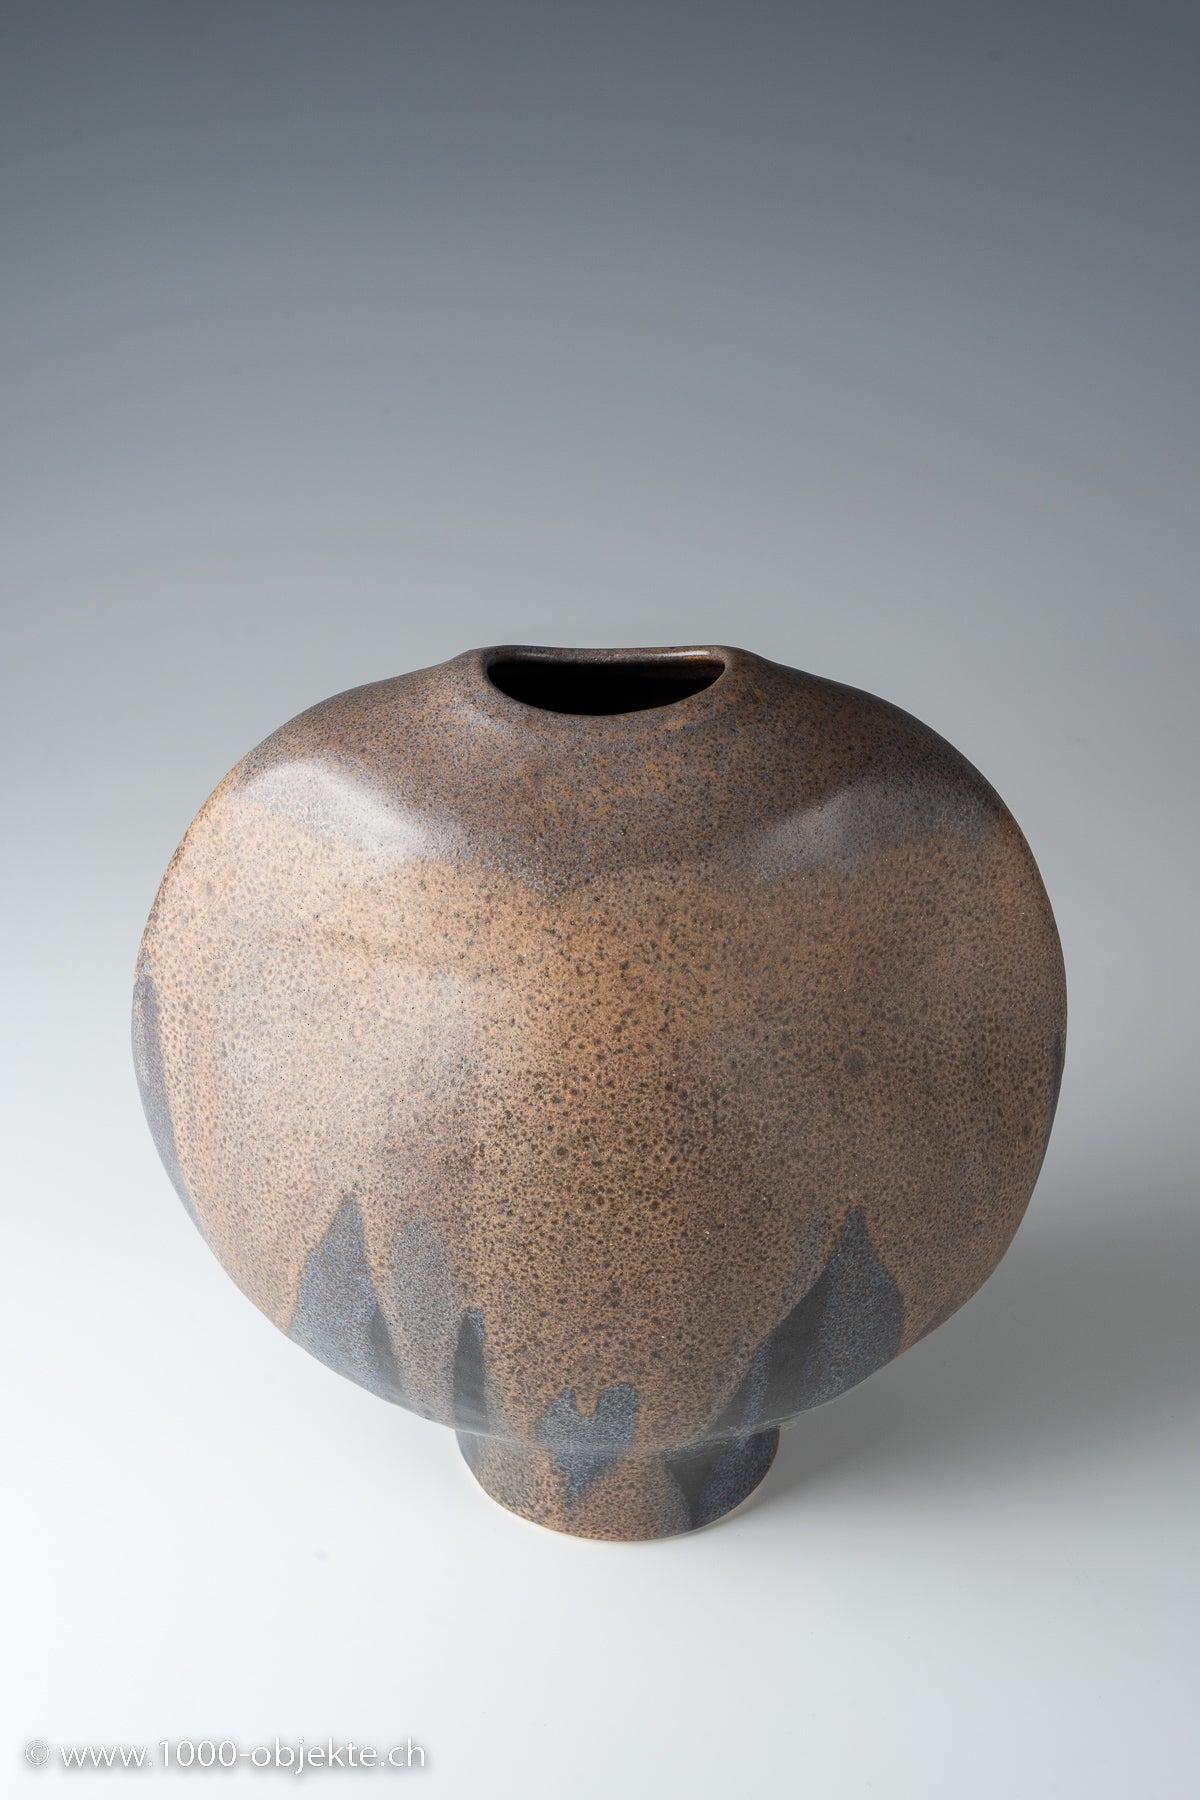 Studio ceramic vase by  Künstler by Heiner H. Balzar